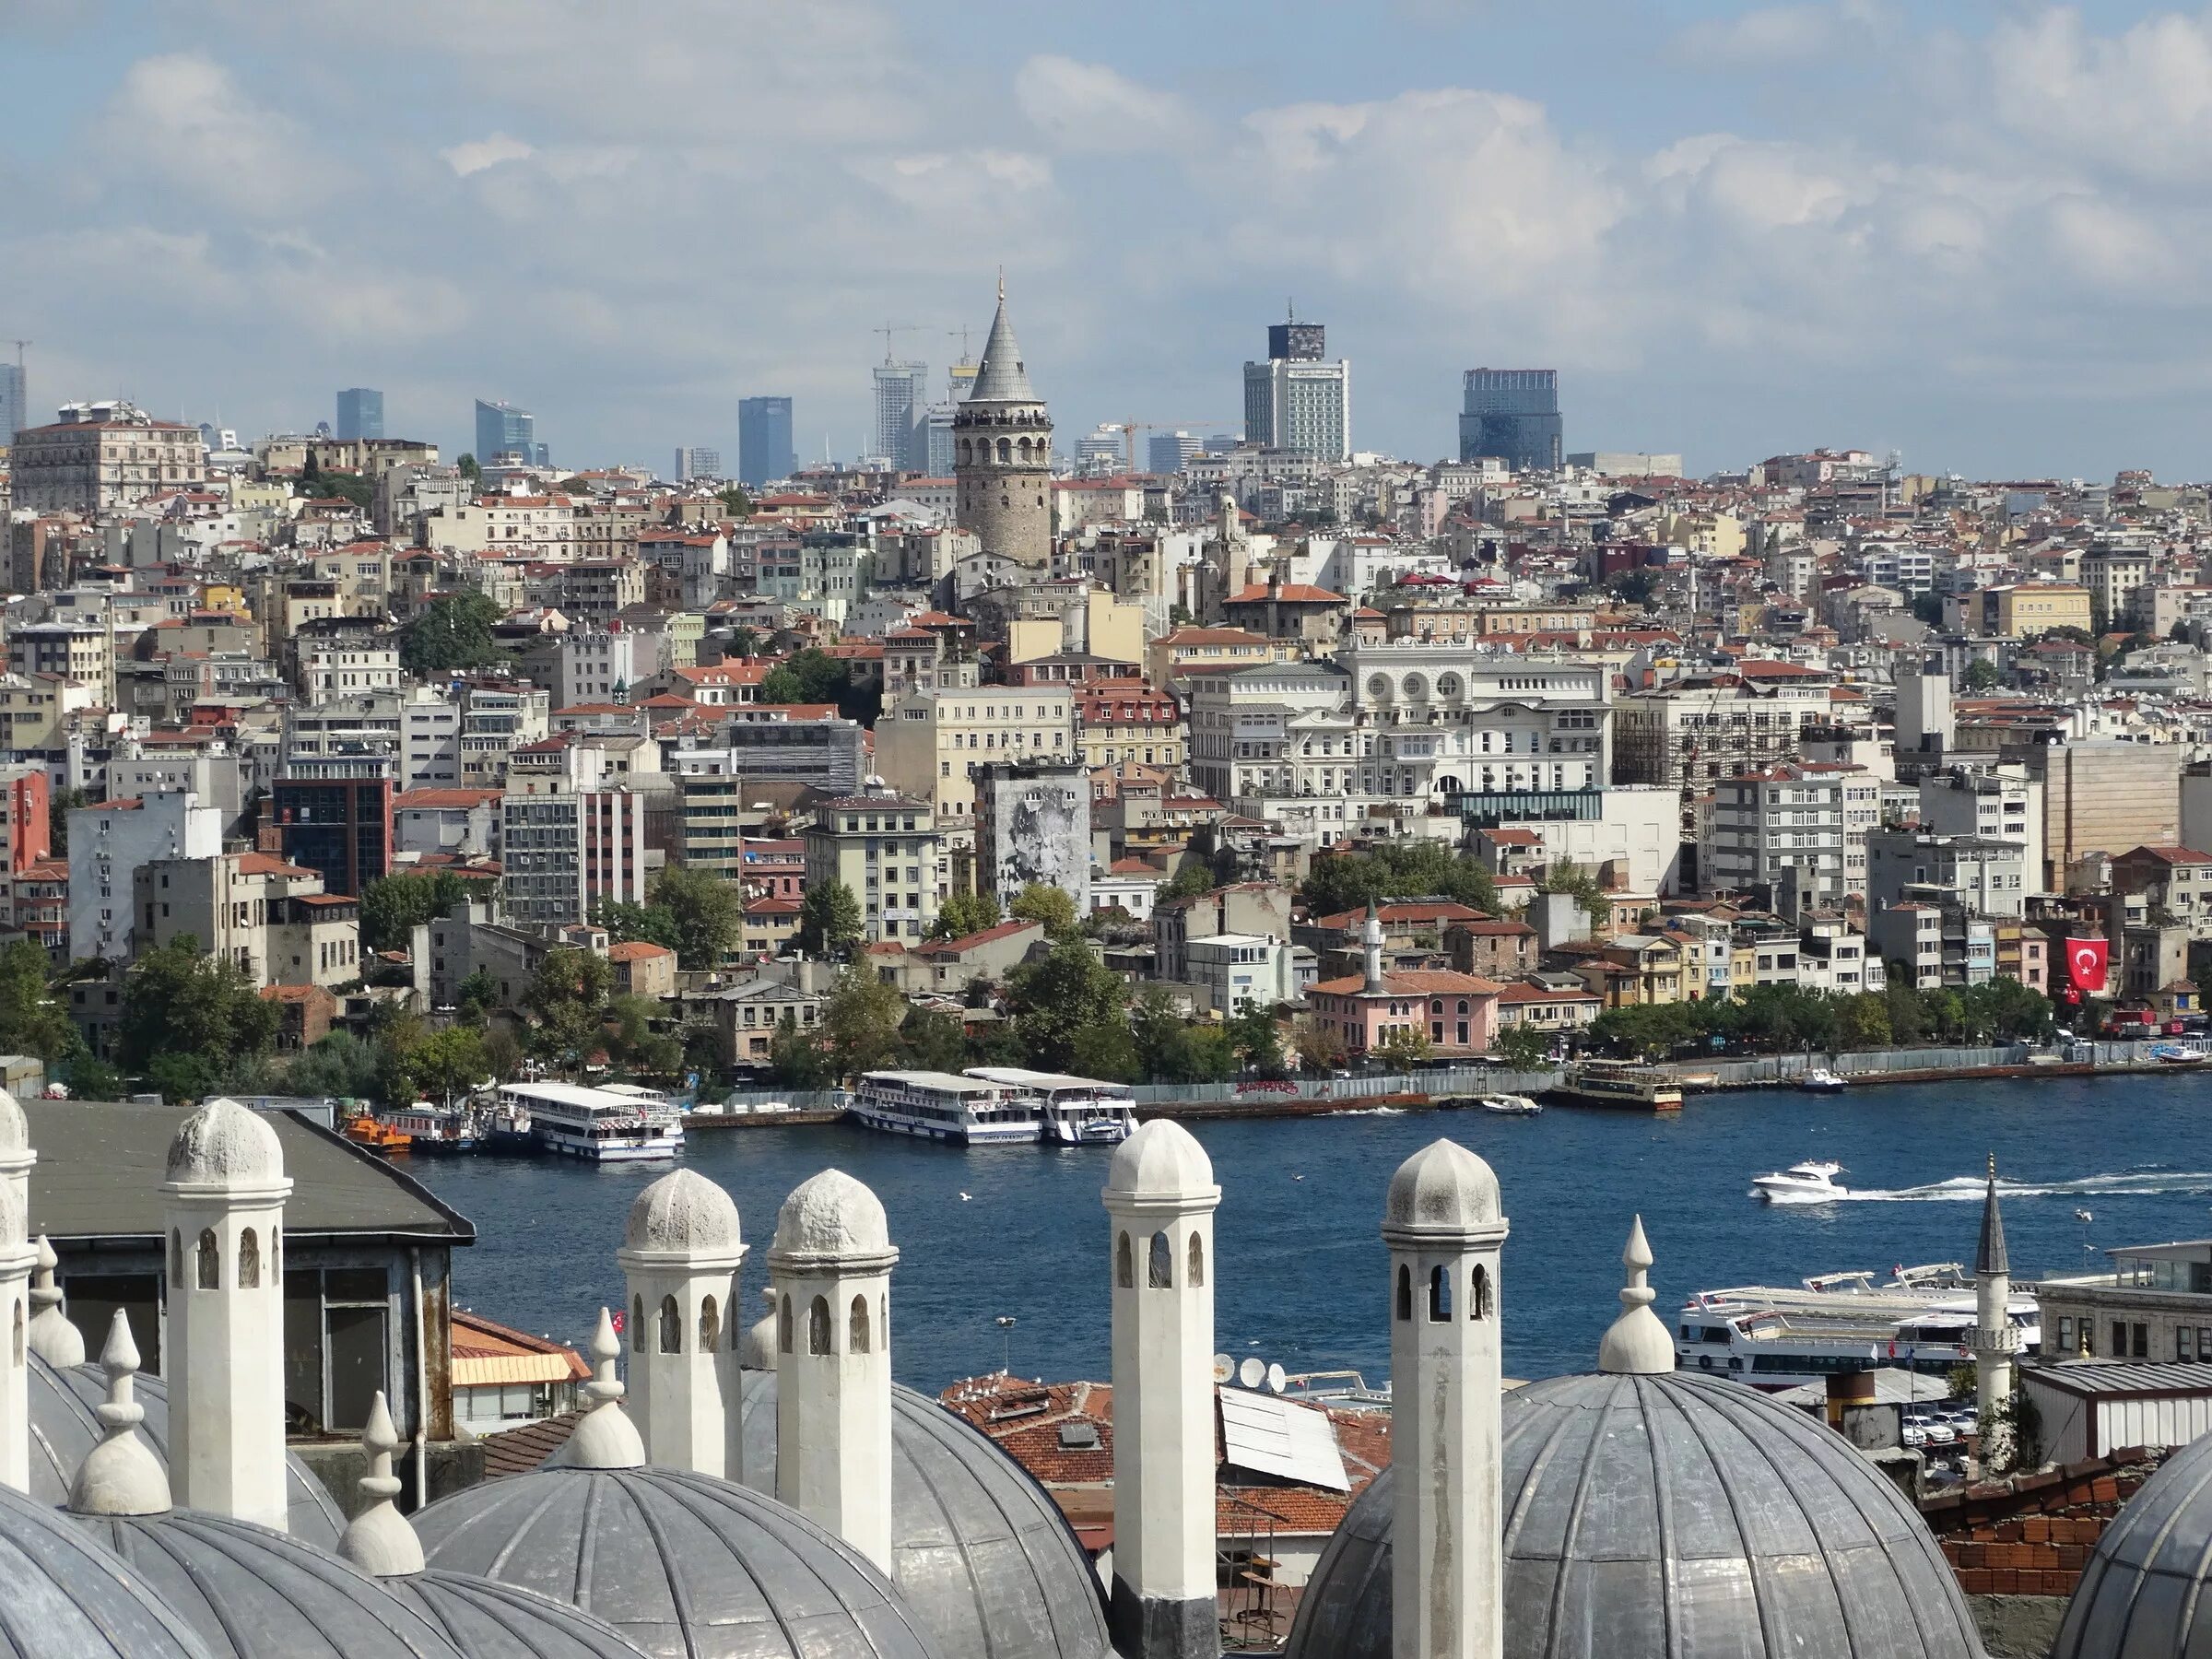 Стамбул старый город султанахмет. Стамбул старый город. Стамбул улочки Босфор. Улица зюрафа в Стамбуле.